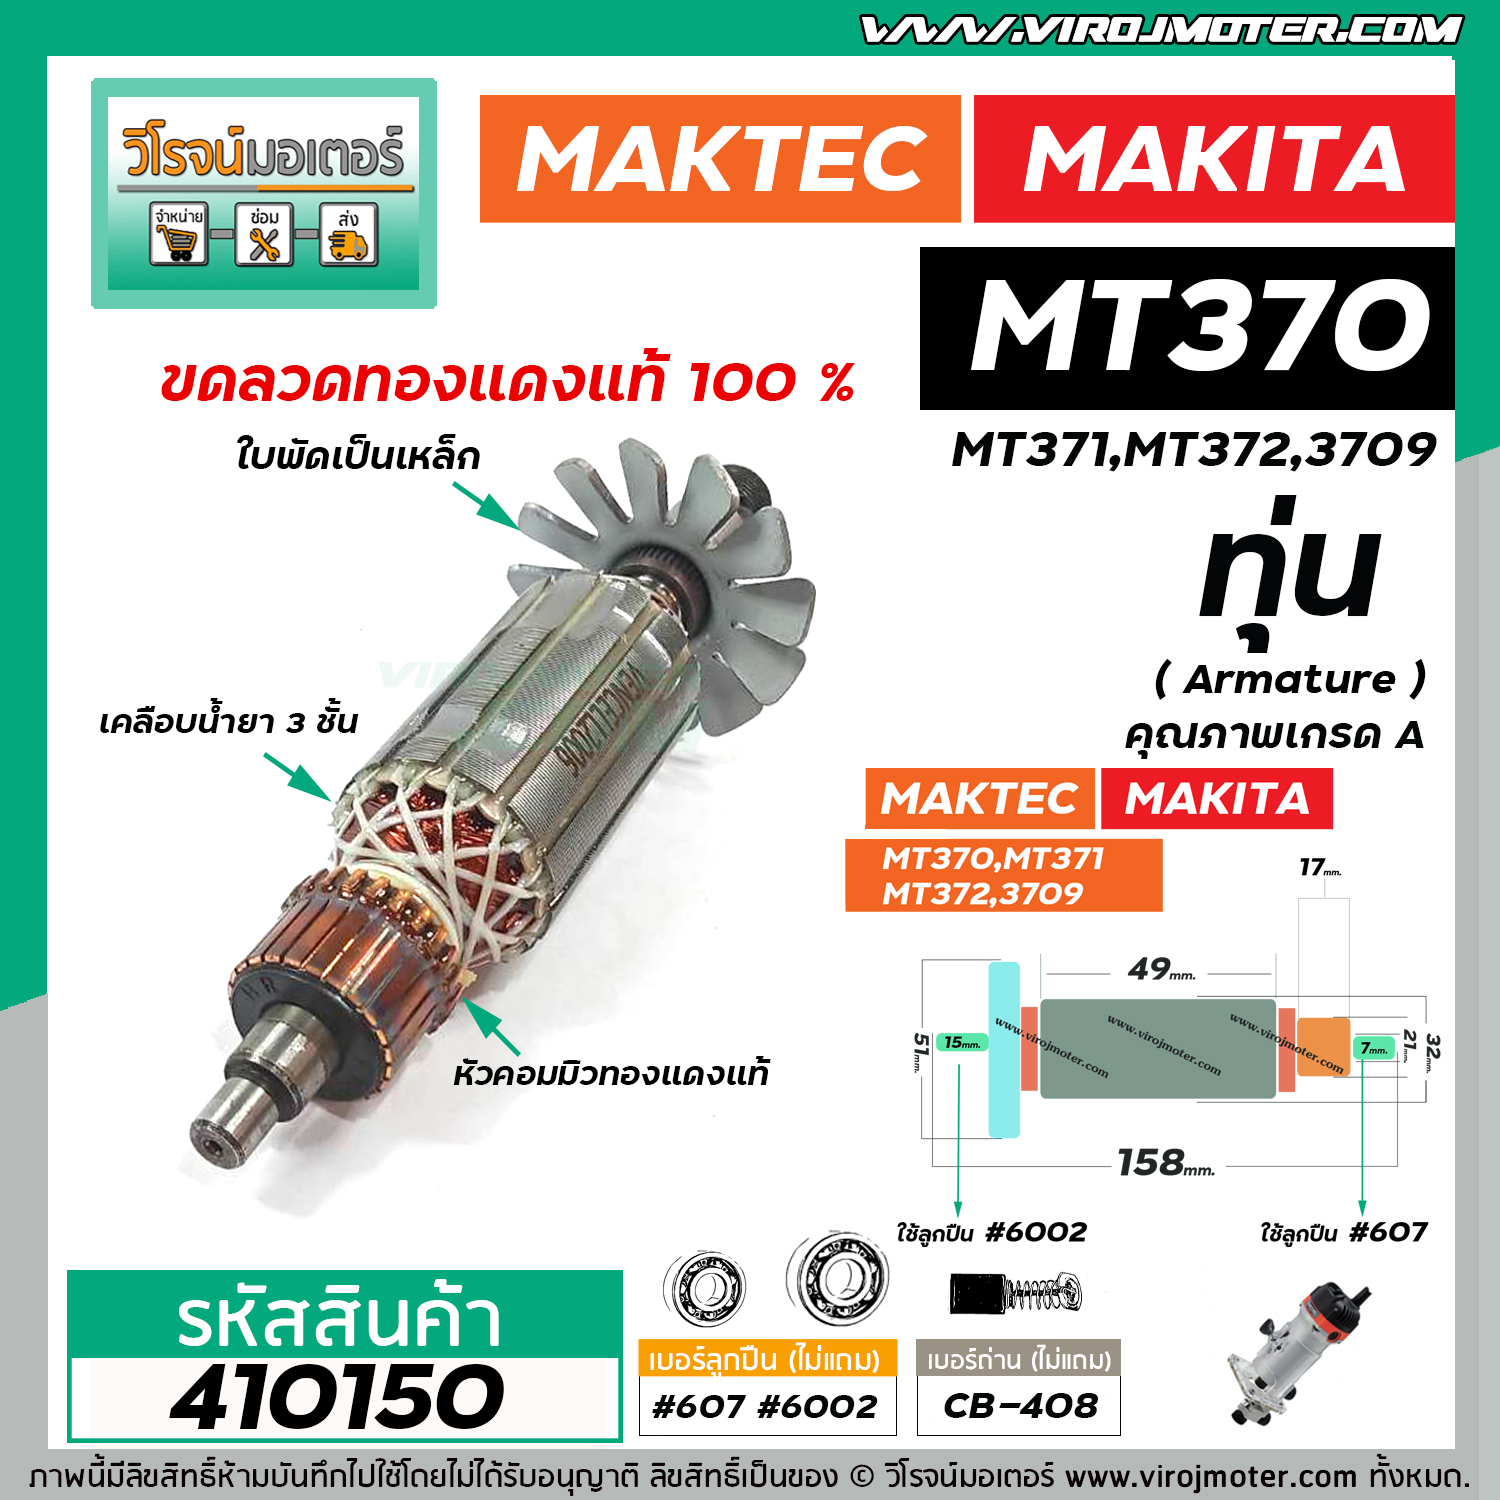 ทุ่นเร้าท์เตอร์ MAKTEC รุ่น MT370,MT371,MT372 MAKITA รุ่น 3709 *ทุ่นแบบ ...